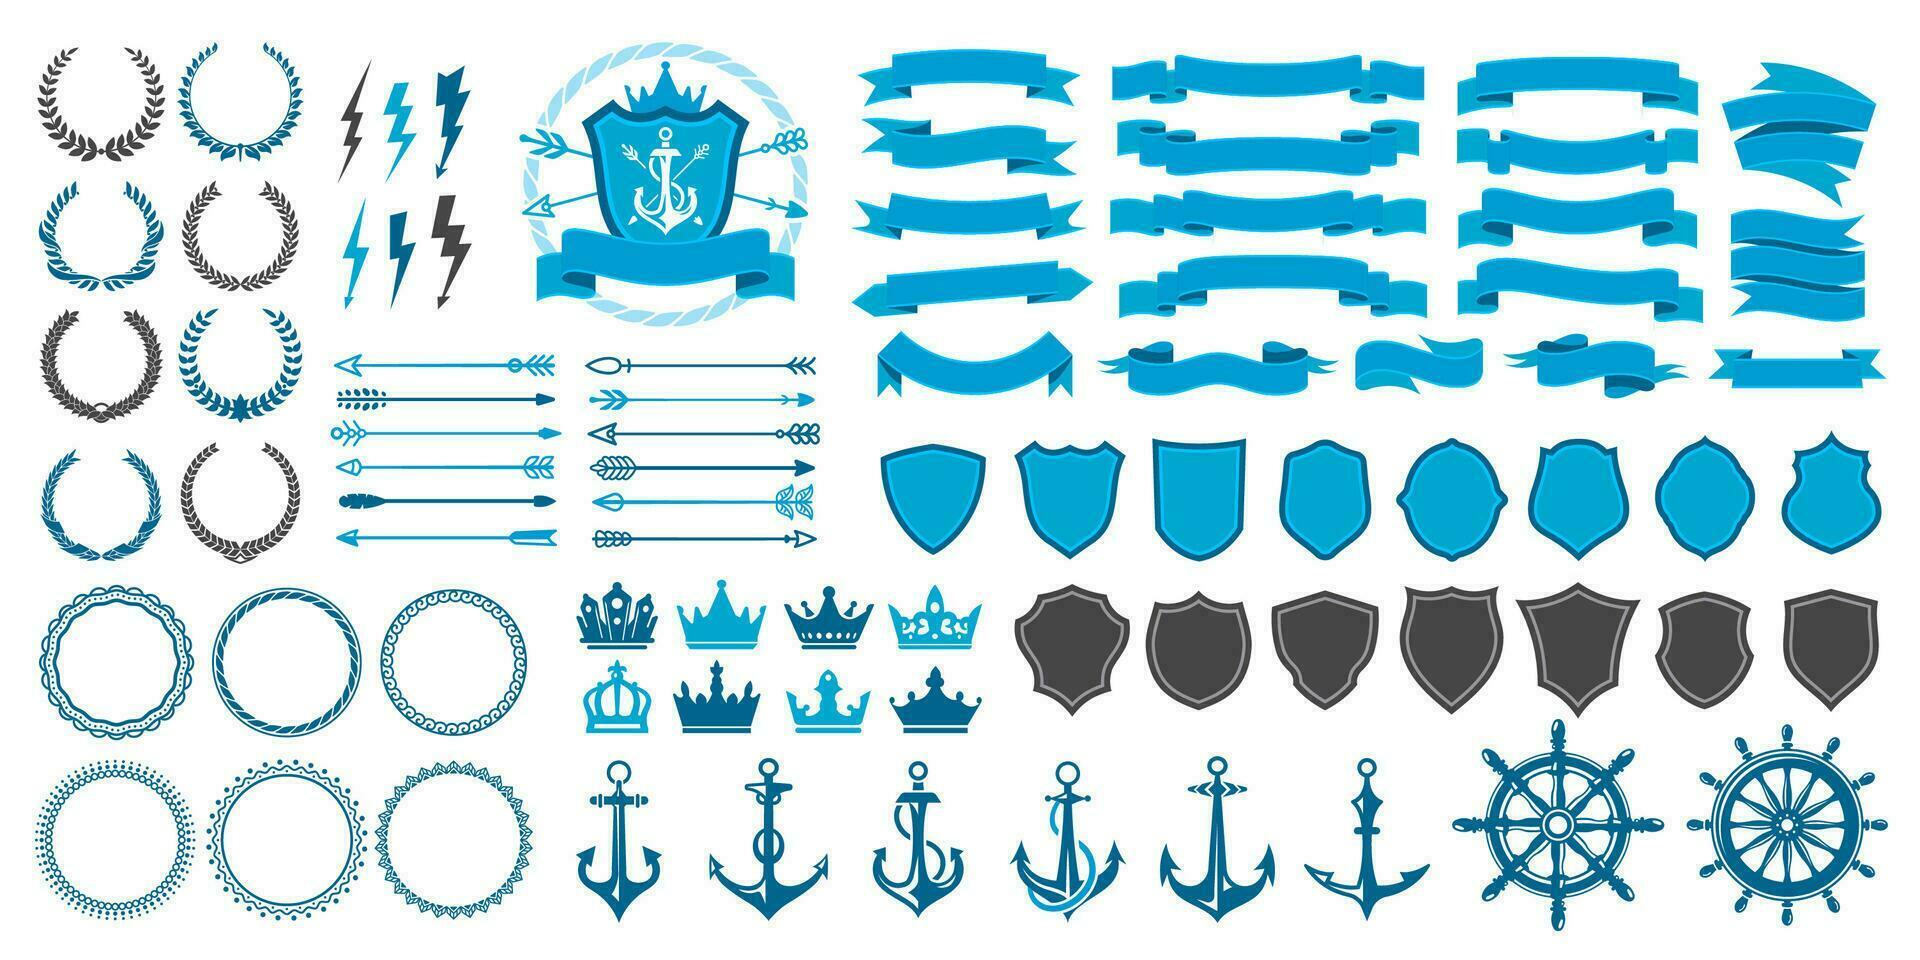 Vintage badge, seal, laurel wreath, crown, arrows vector